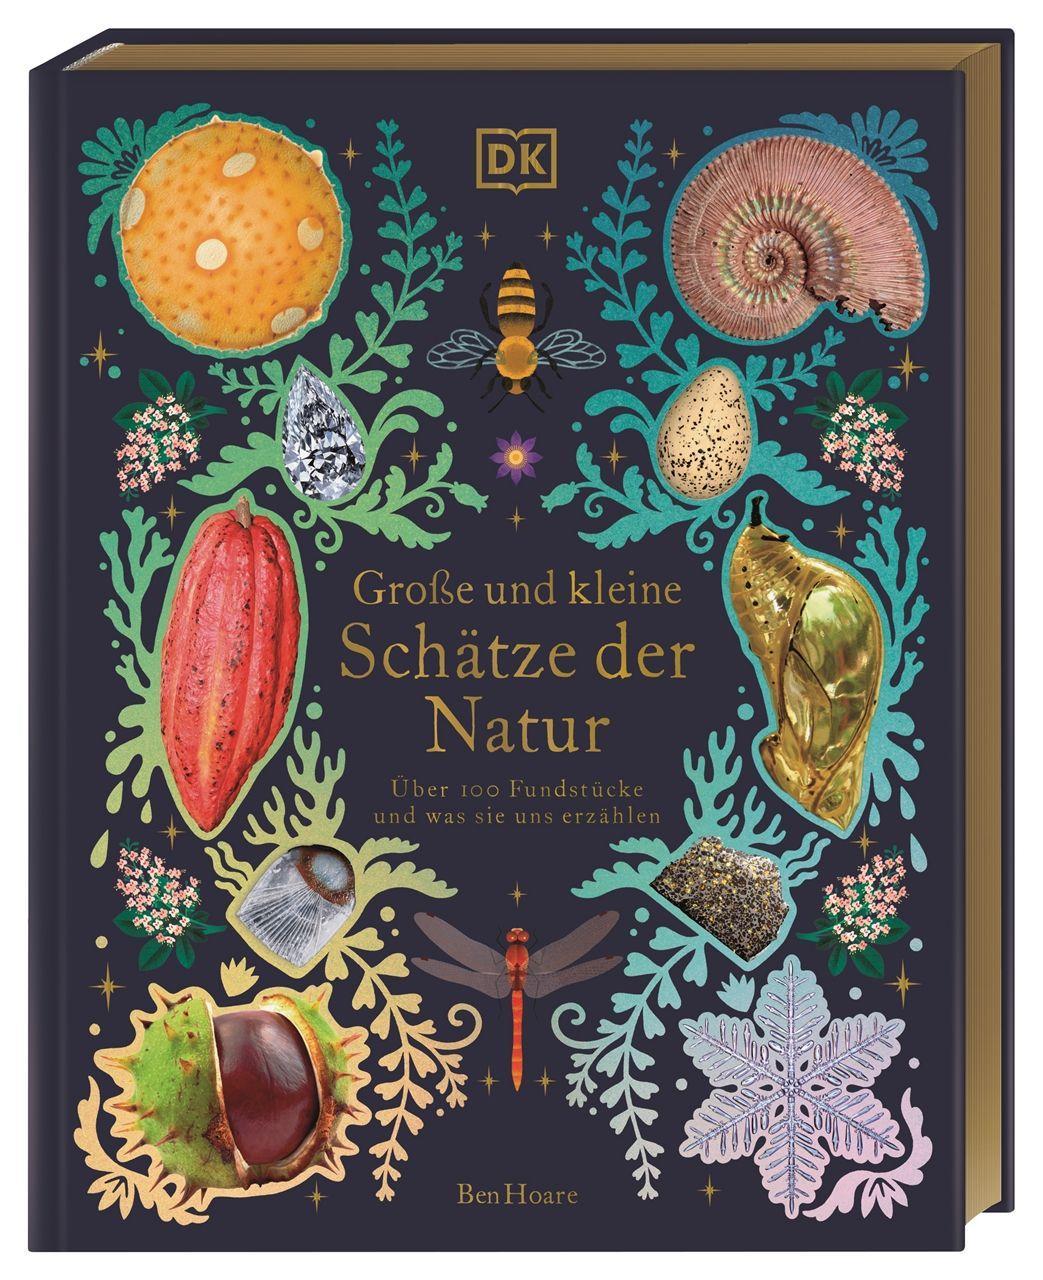 Книга Große und kleine Schätze der Natur. Große und kleine Schätze der Natur Kaley McKean